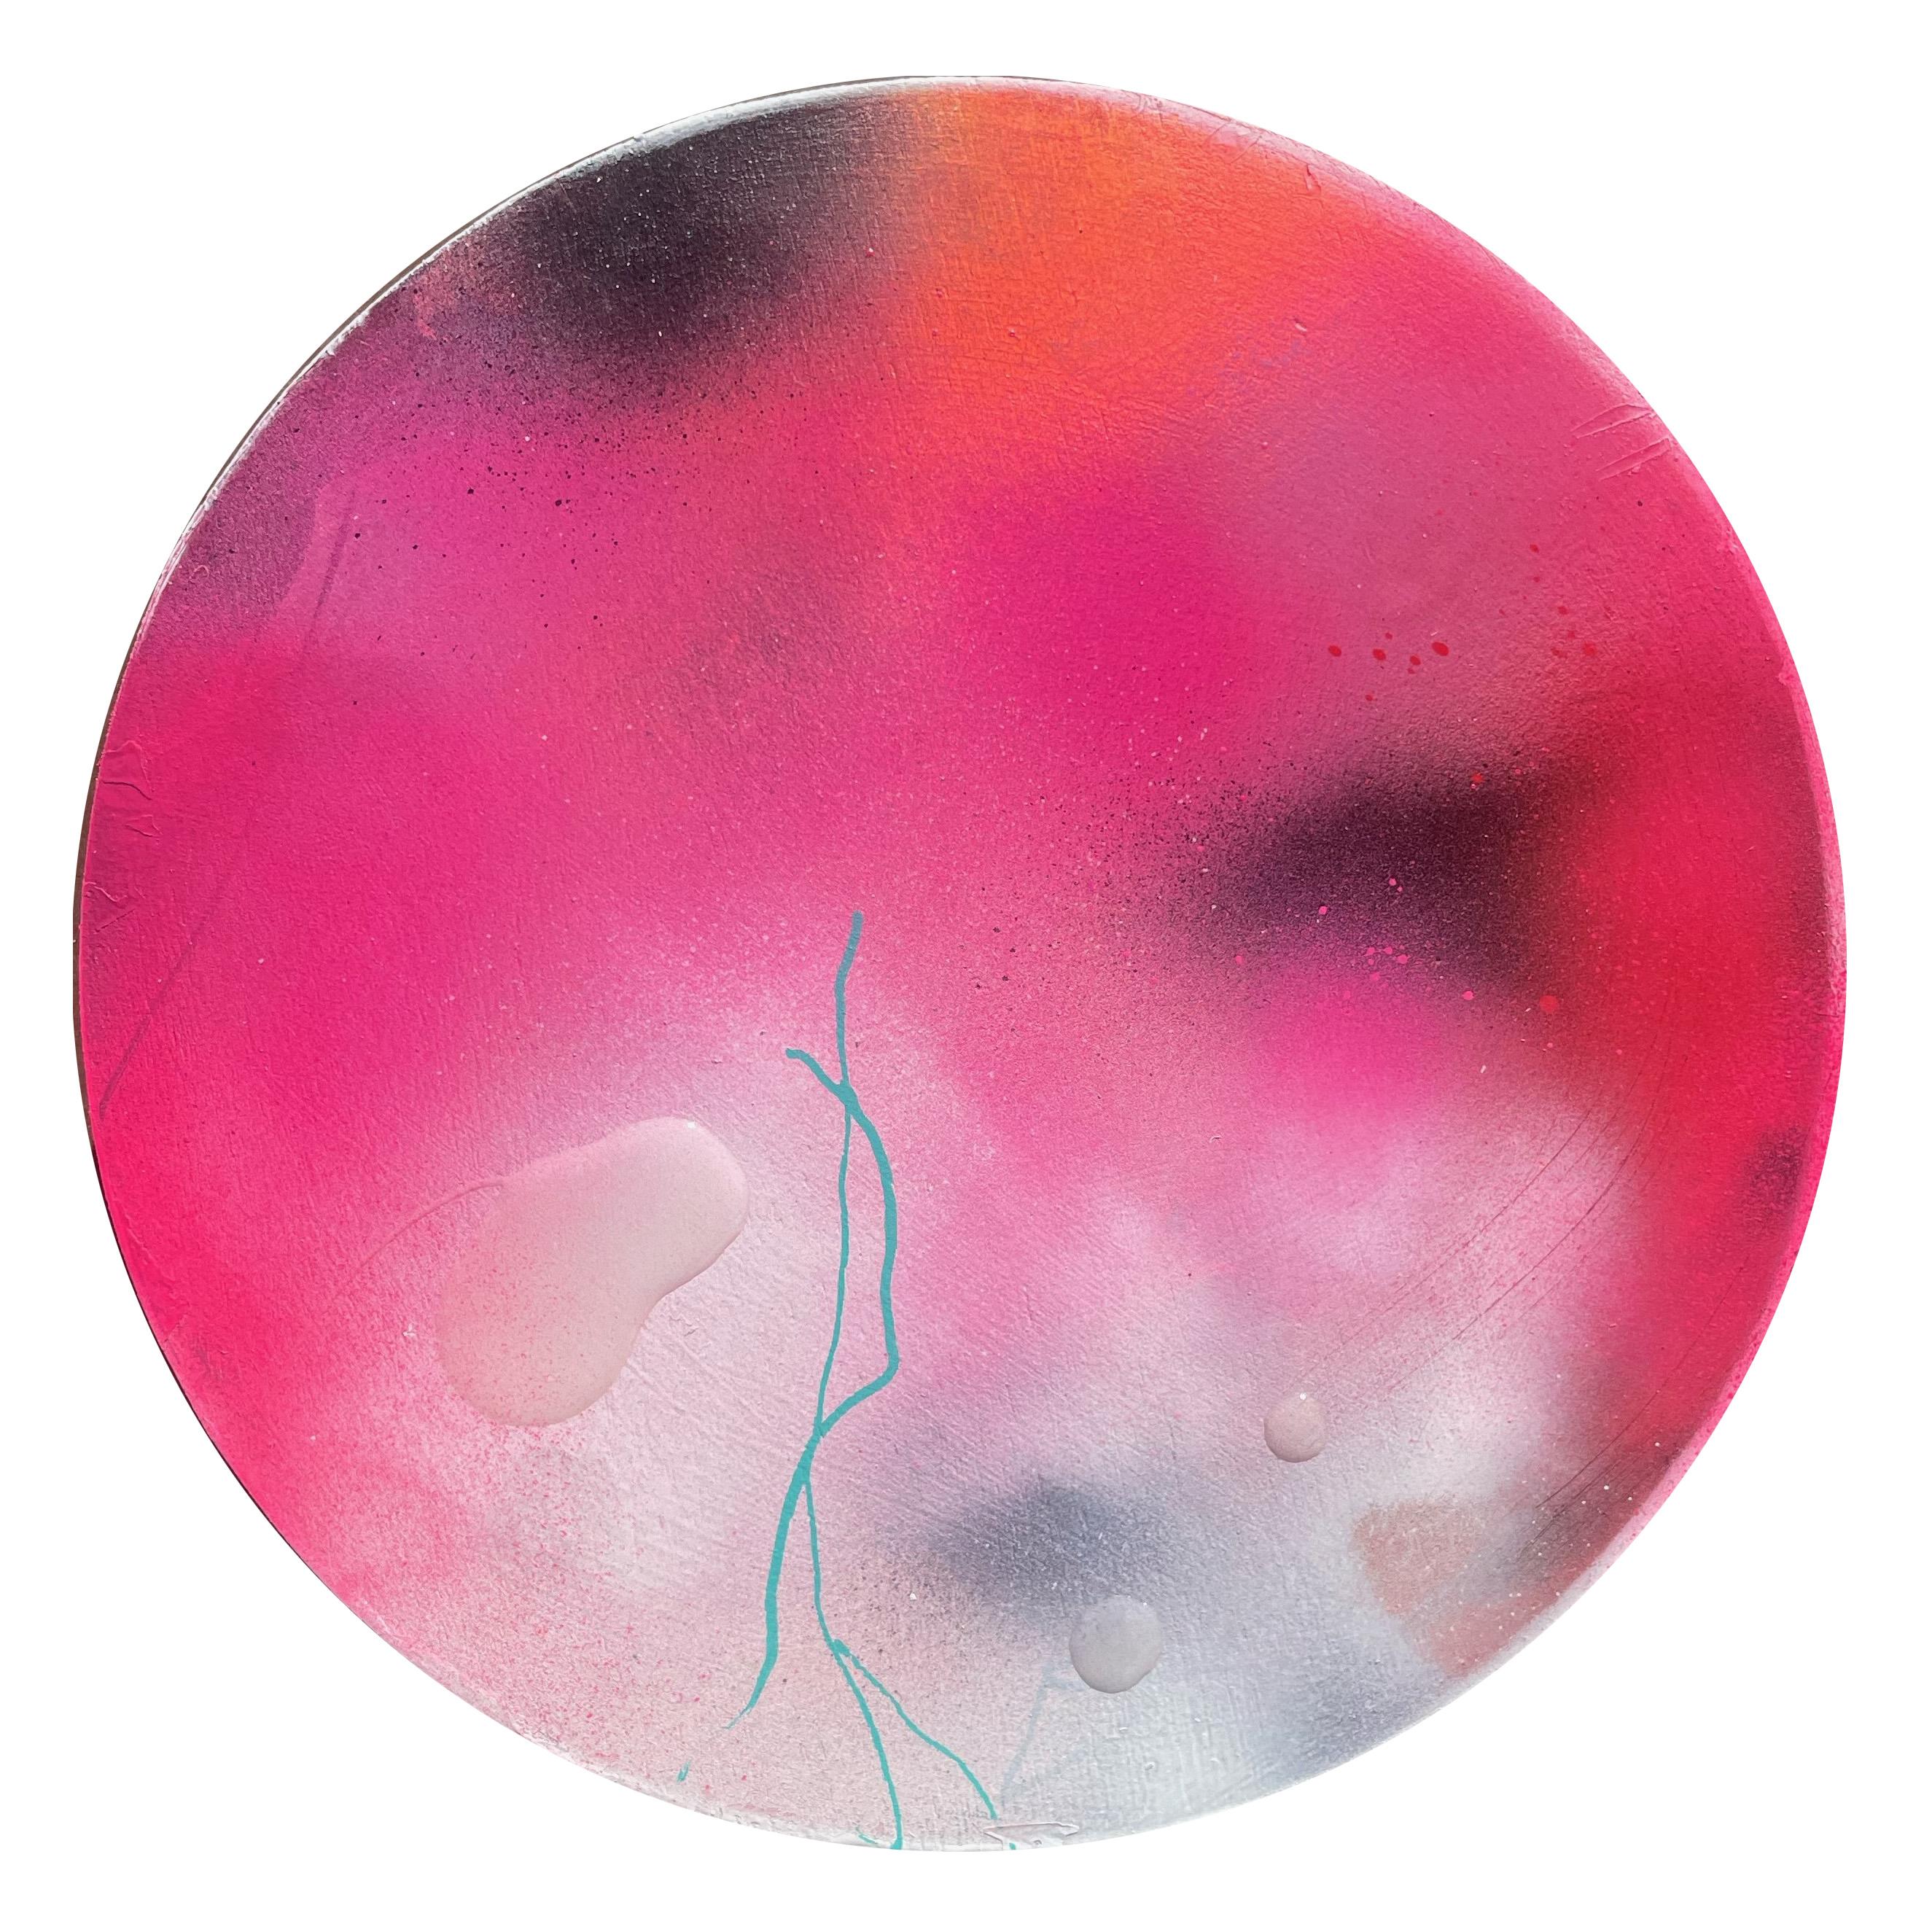 "Perlende Tautropfen 3" Zeitgenössische farbenfrohe abstrakte kreisförmige Malerei – Mixed Media Art von David Hardaker